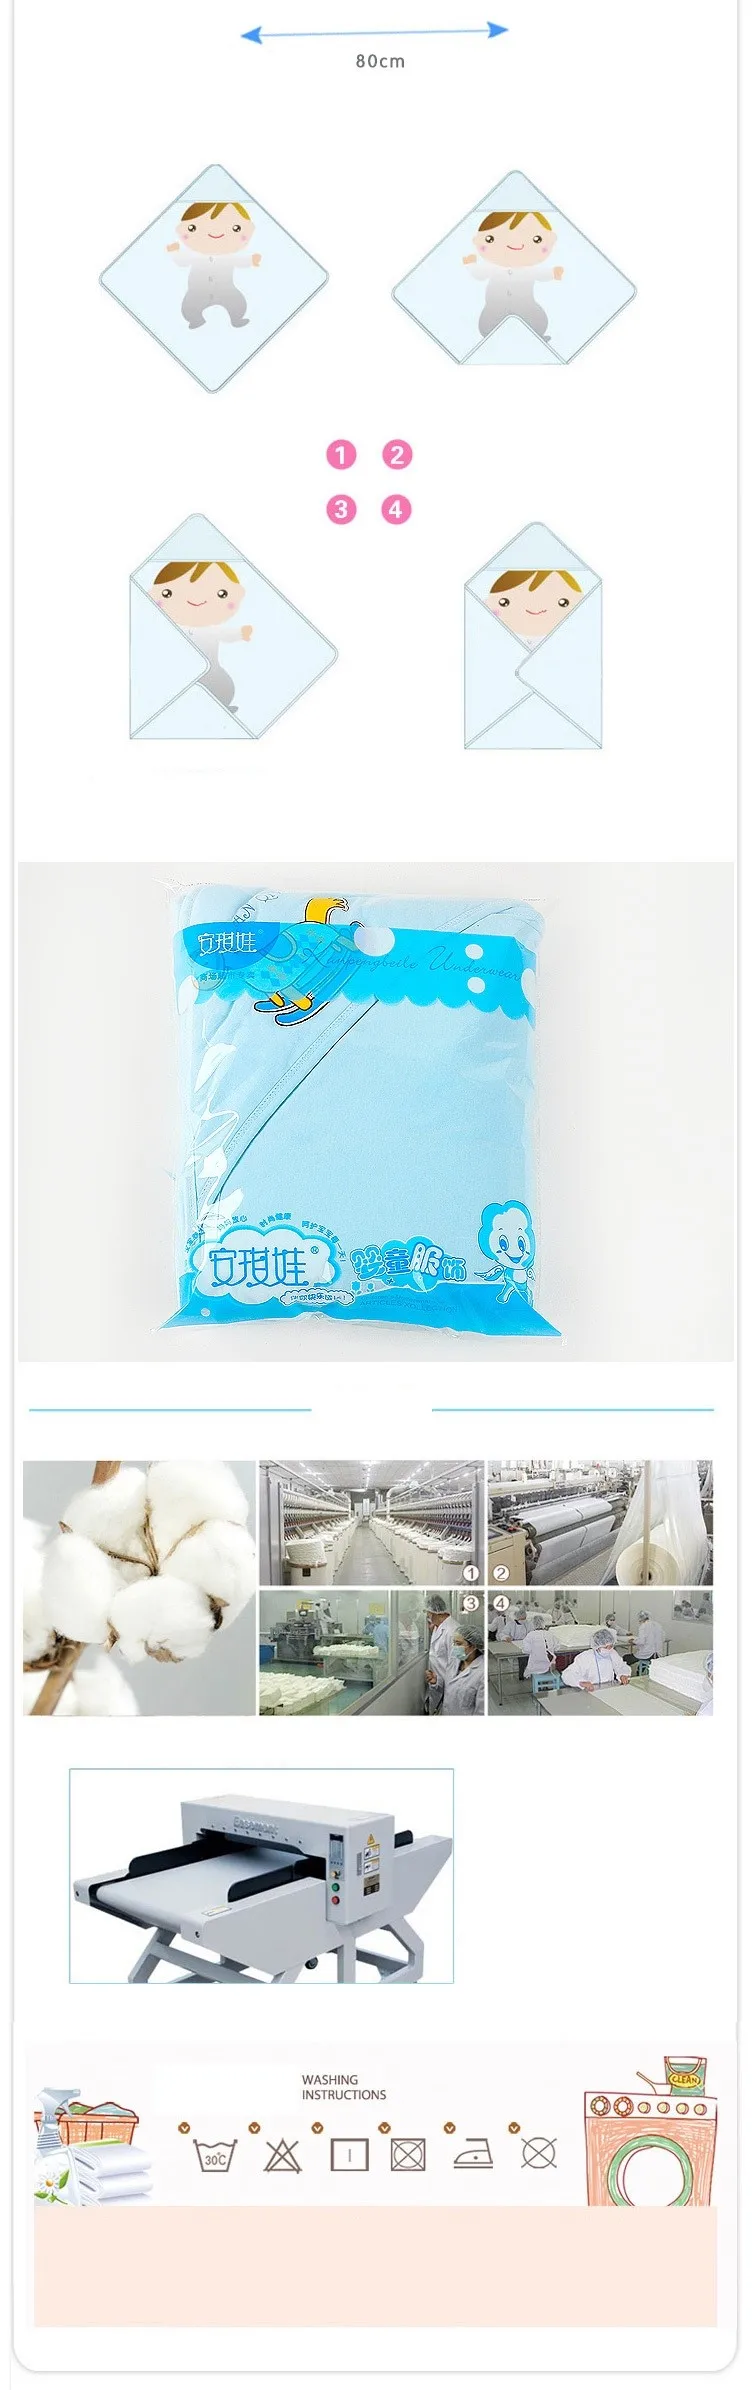 Спальный мешок 80x80 см, хлопковый Конверт для младенцев, детское одеяло, спальный мешок для новорожденных, спальный мешок с рисунком, детское одеяло